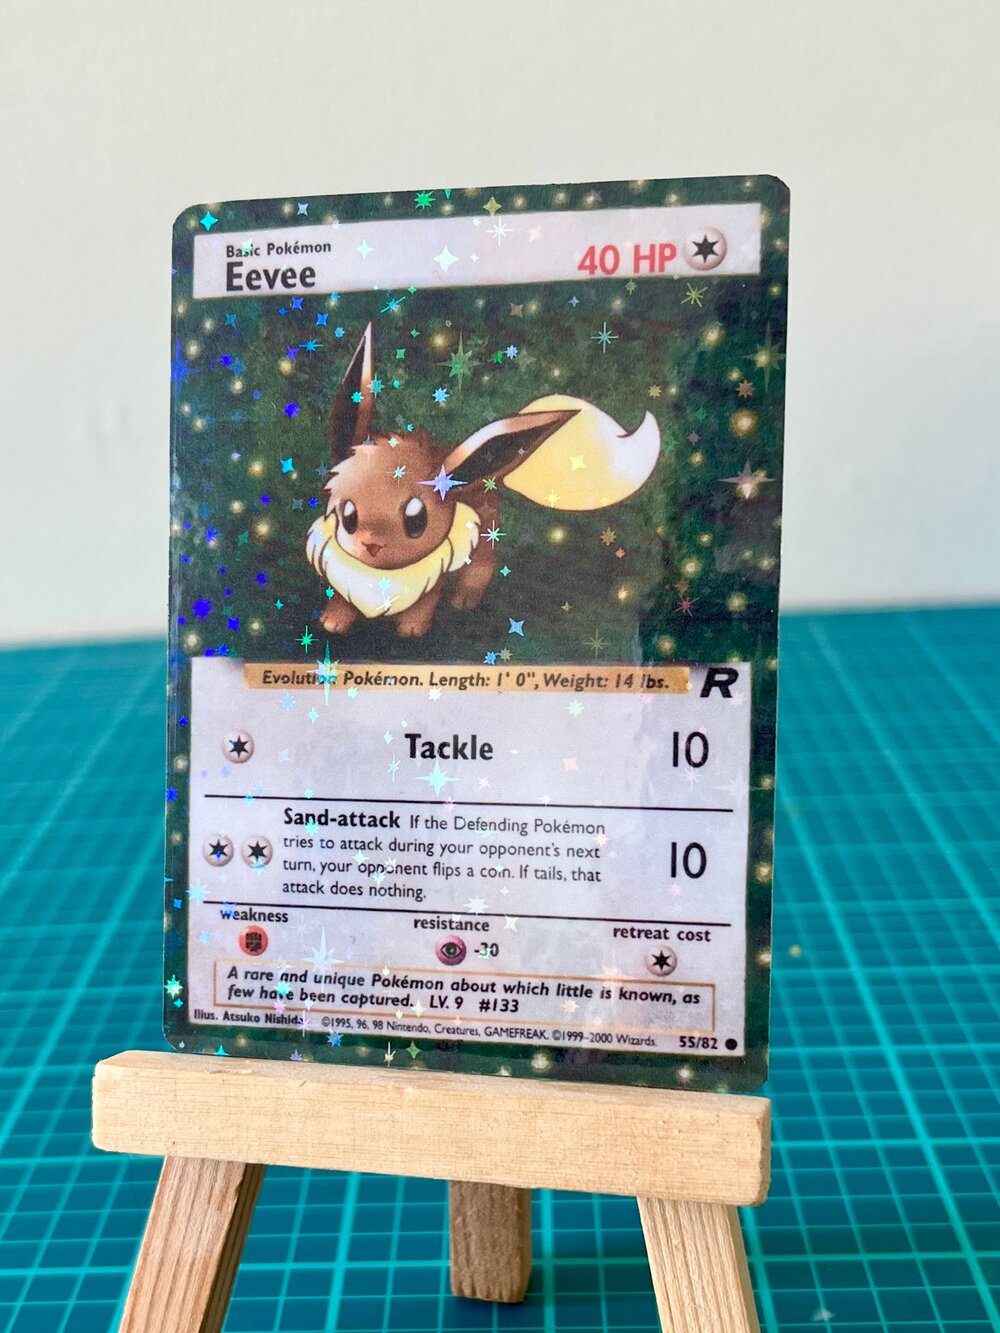 Eevee - Team Rocket Pokémon card 55/82